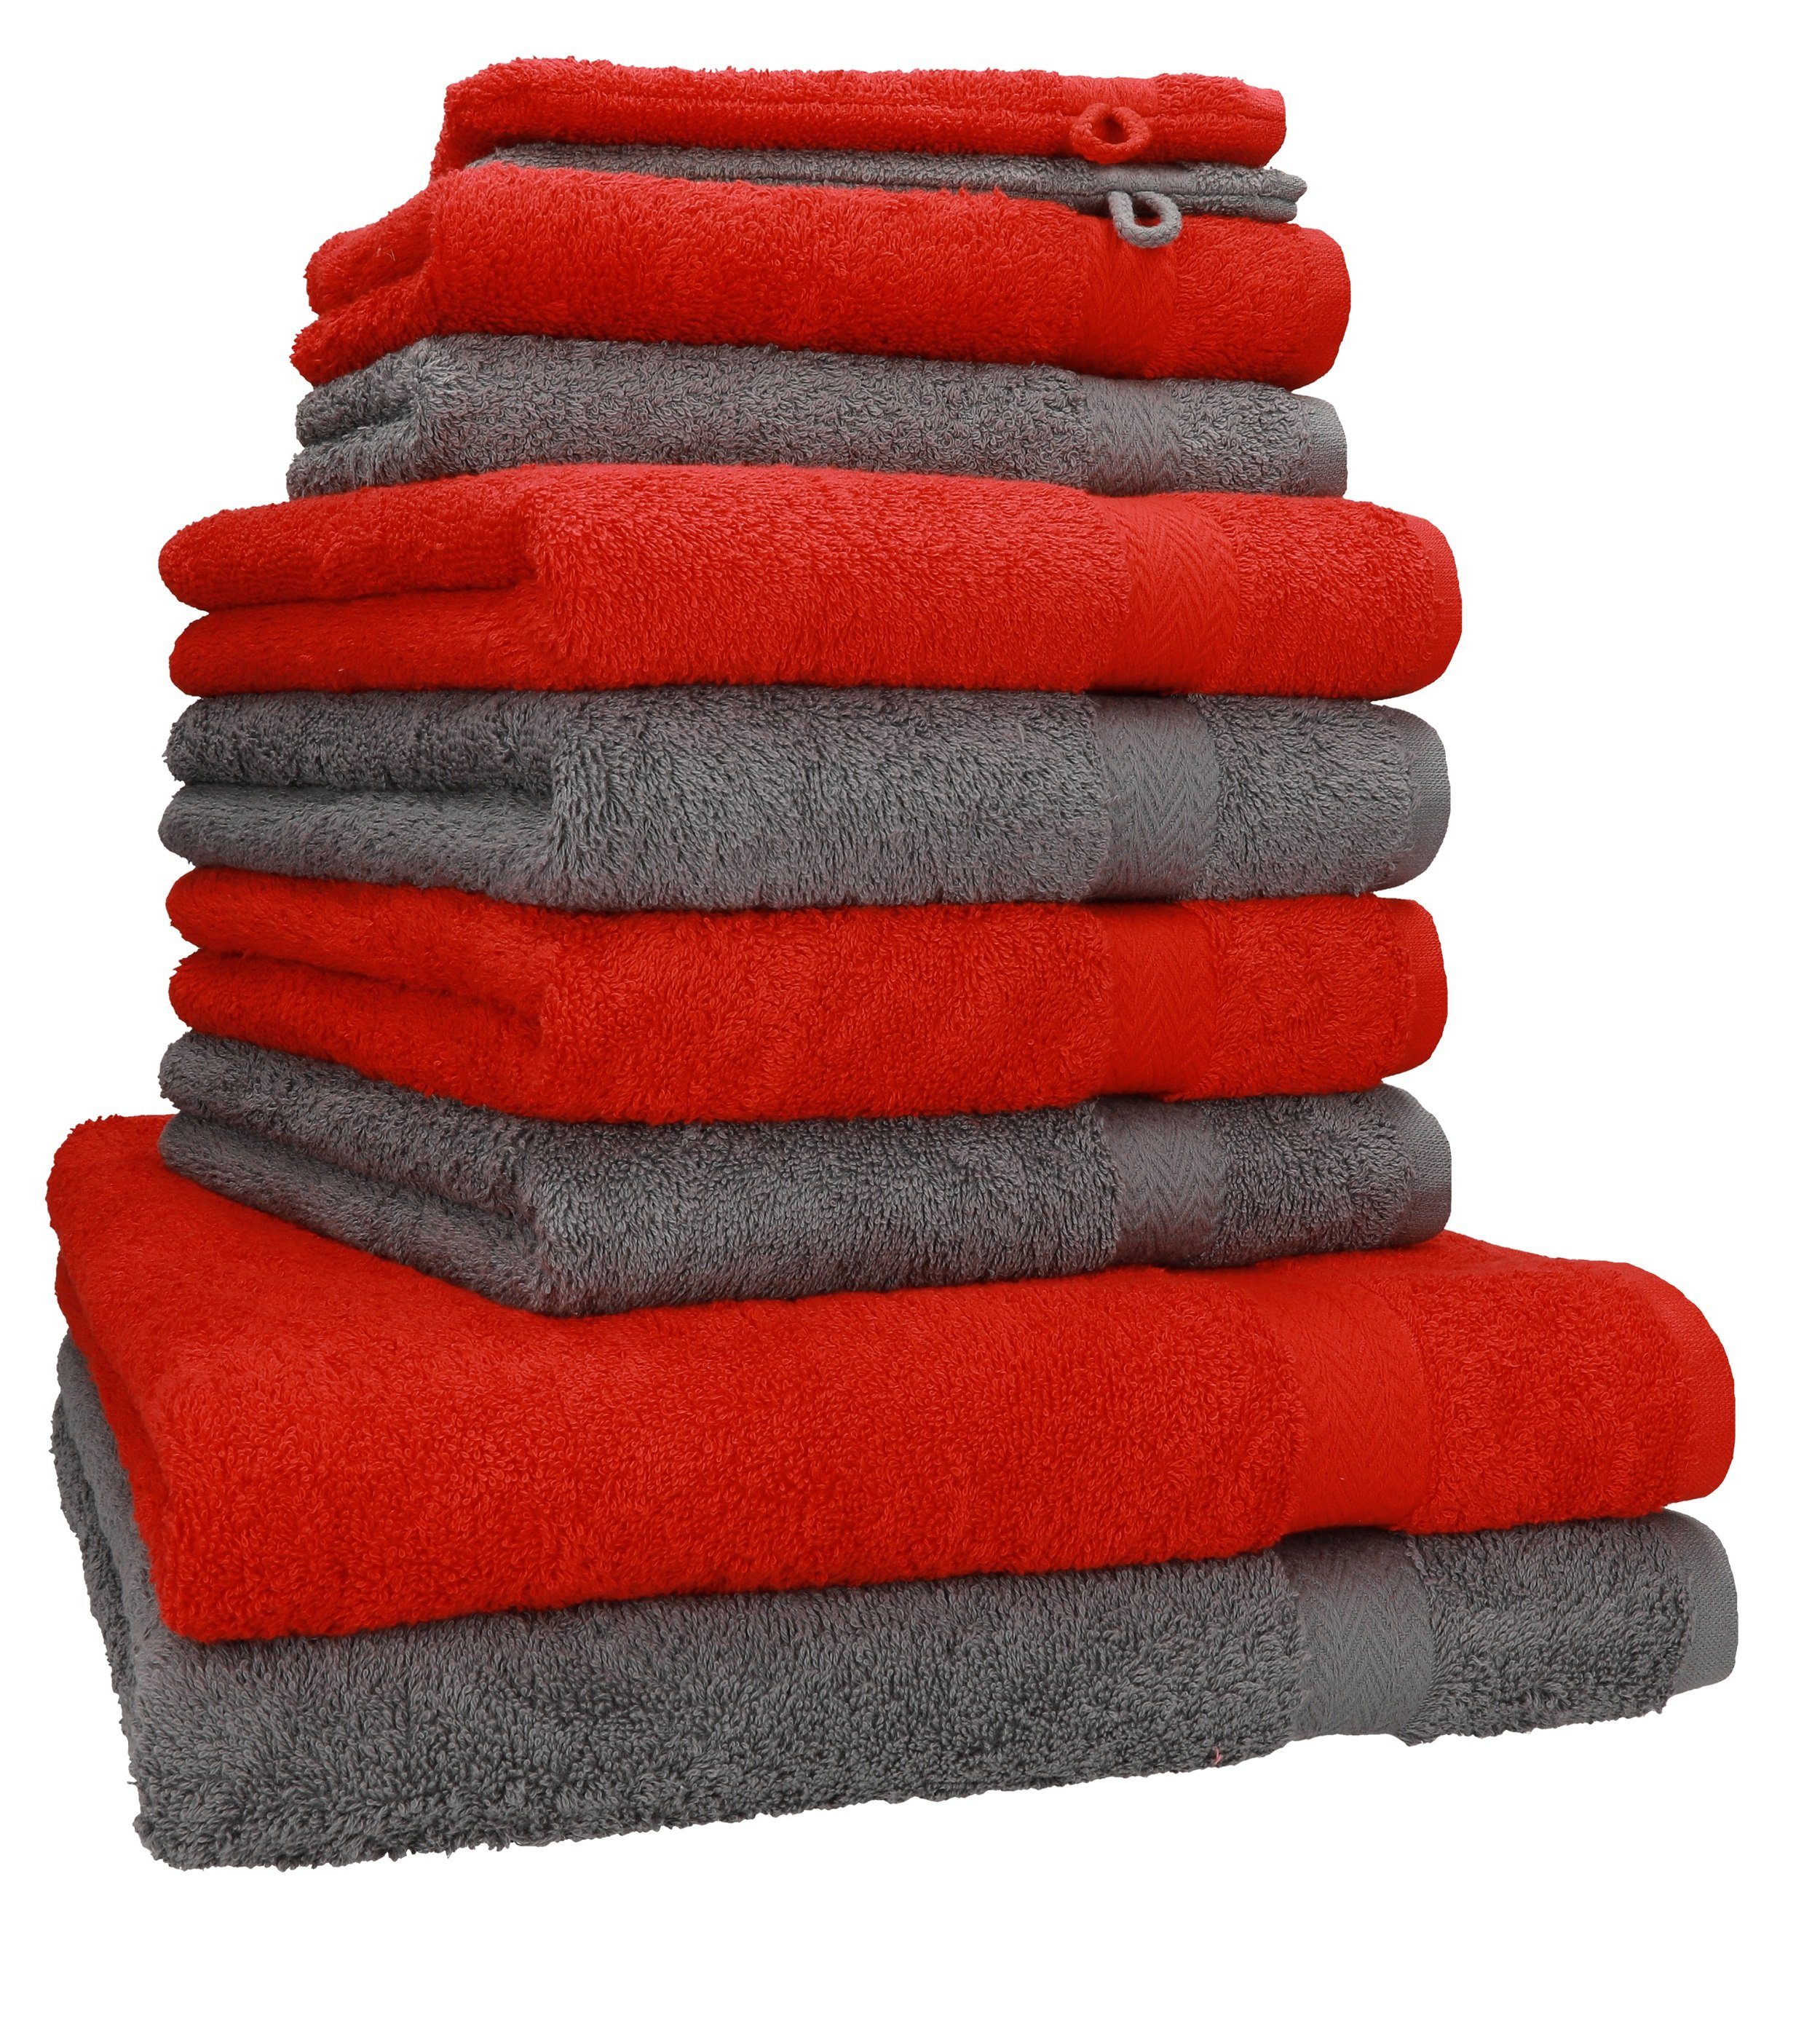 Betz Handtuch Set 10-TLG. Handtuch-Set Premium Farbe Rot & Anthrazit, 100% Baumwolle, (10-tlg)